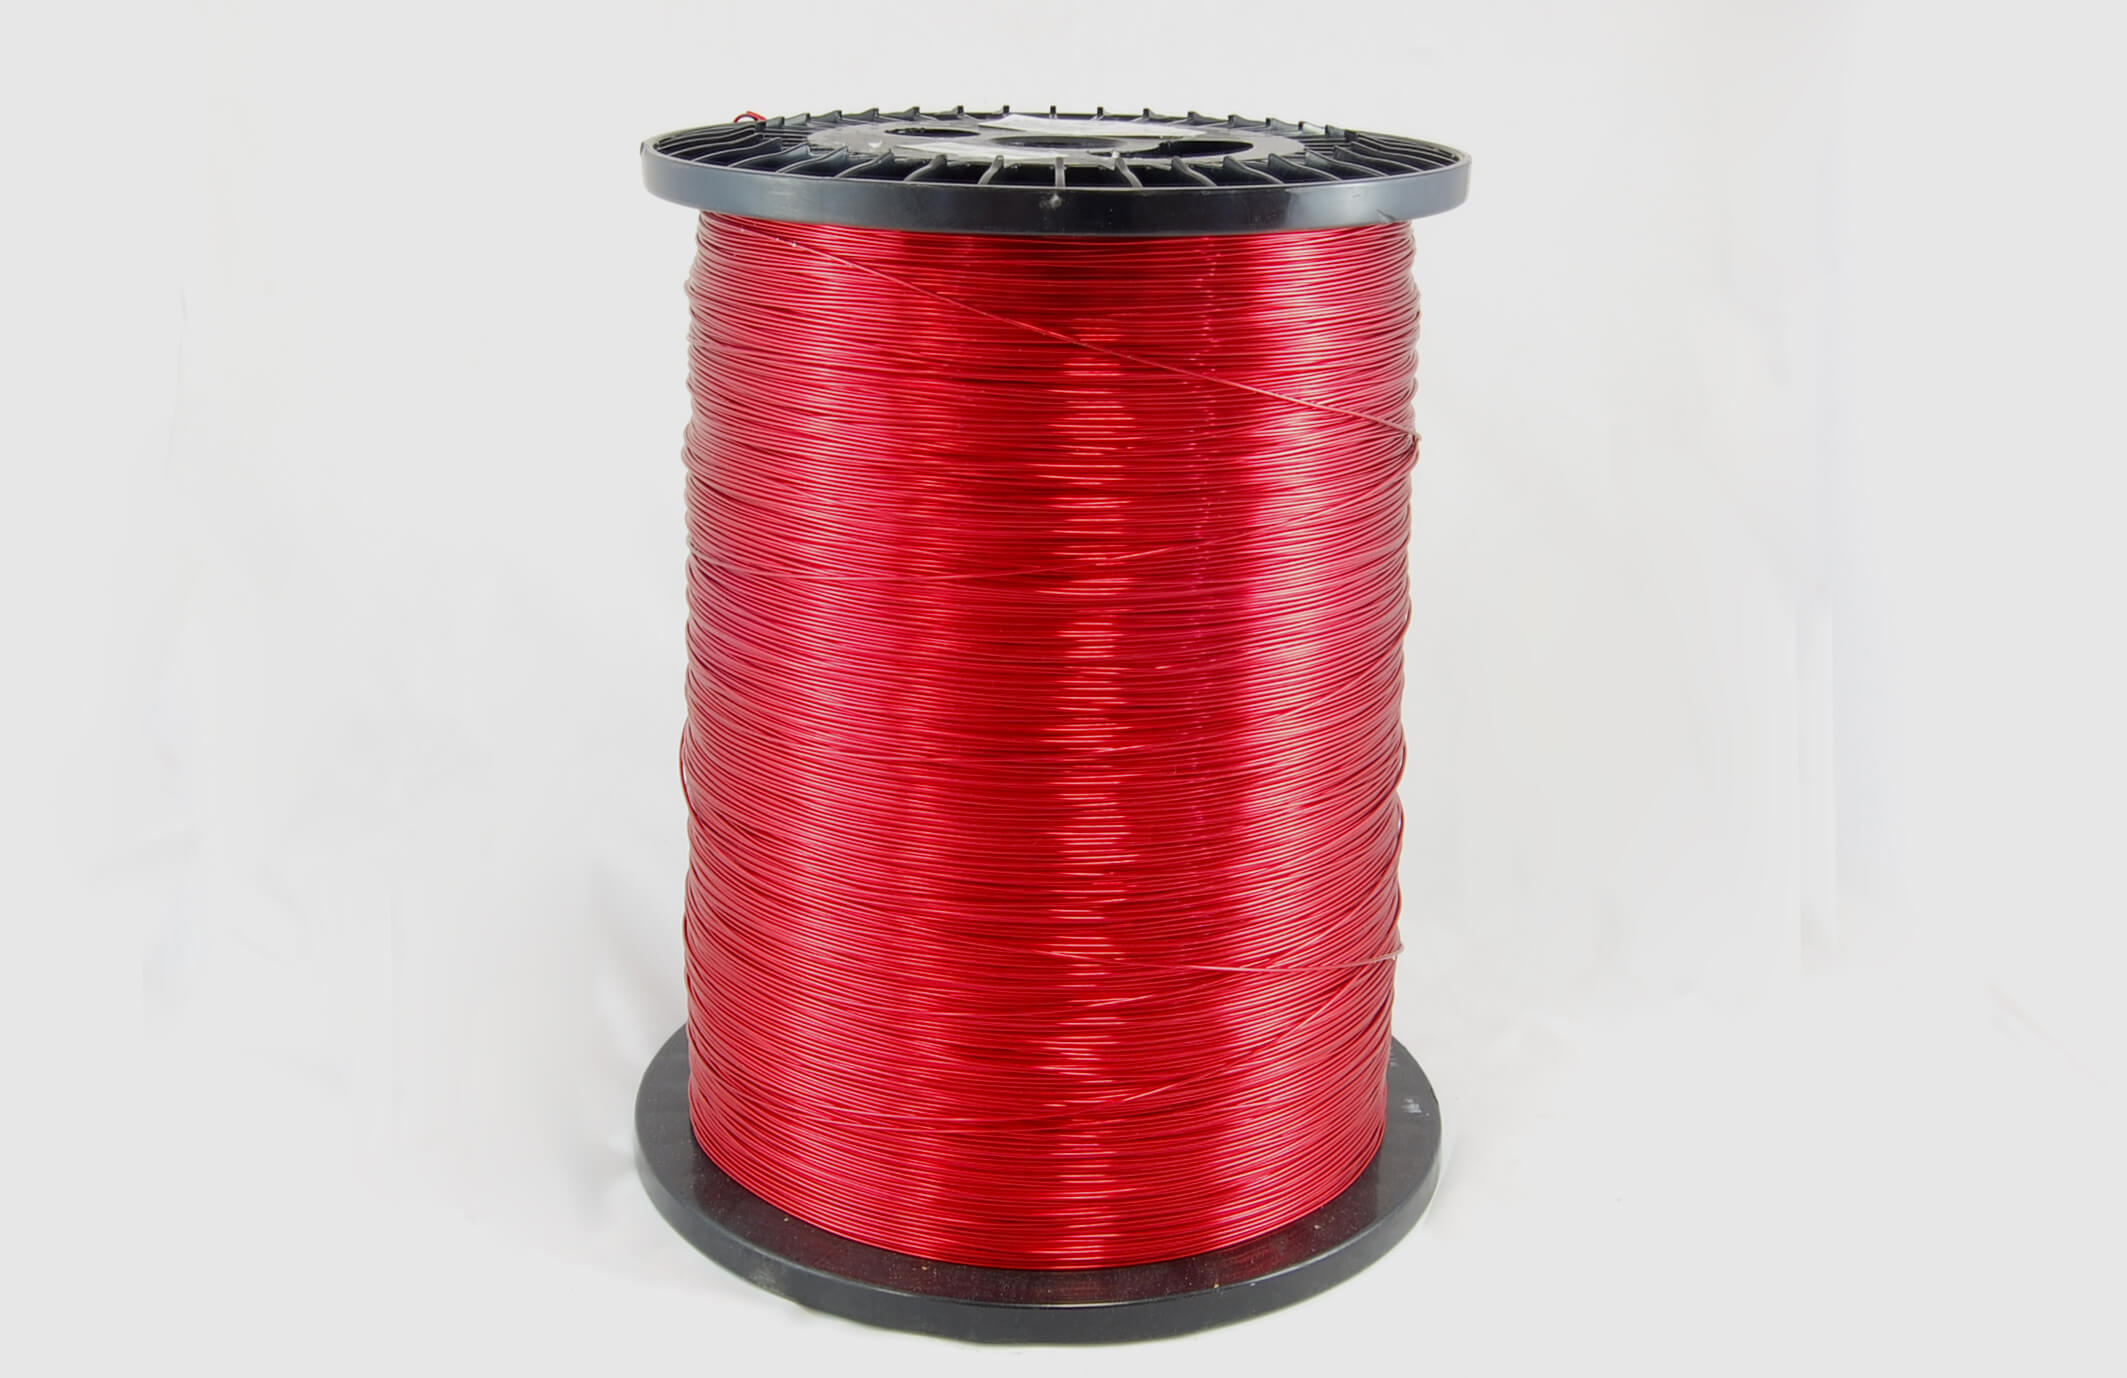 #28 Single Nysol  Round SNSR MW 80 Copper Magnet Wire 155°C, red, 85 LB box (average wght.)